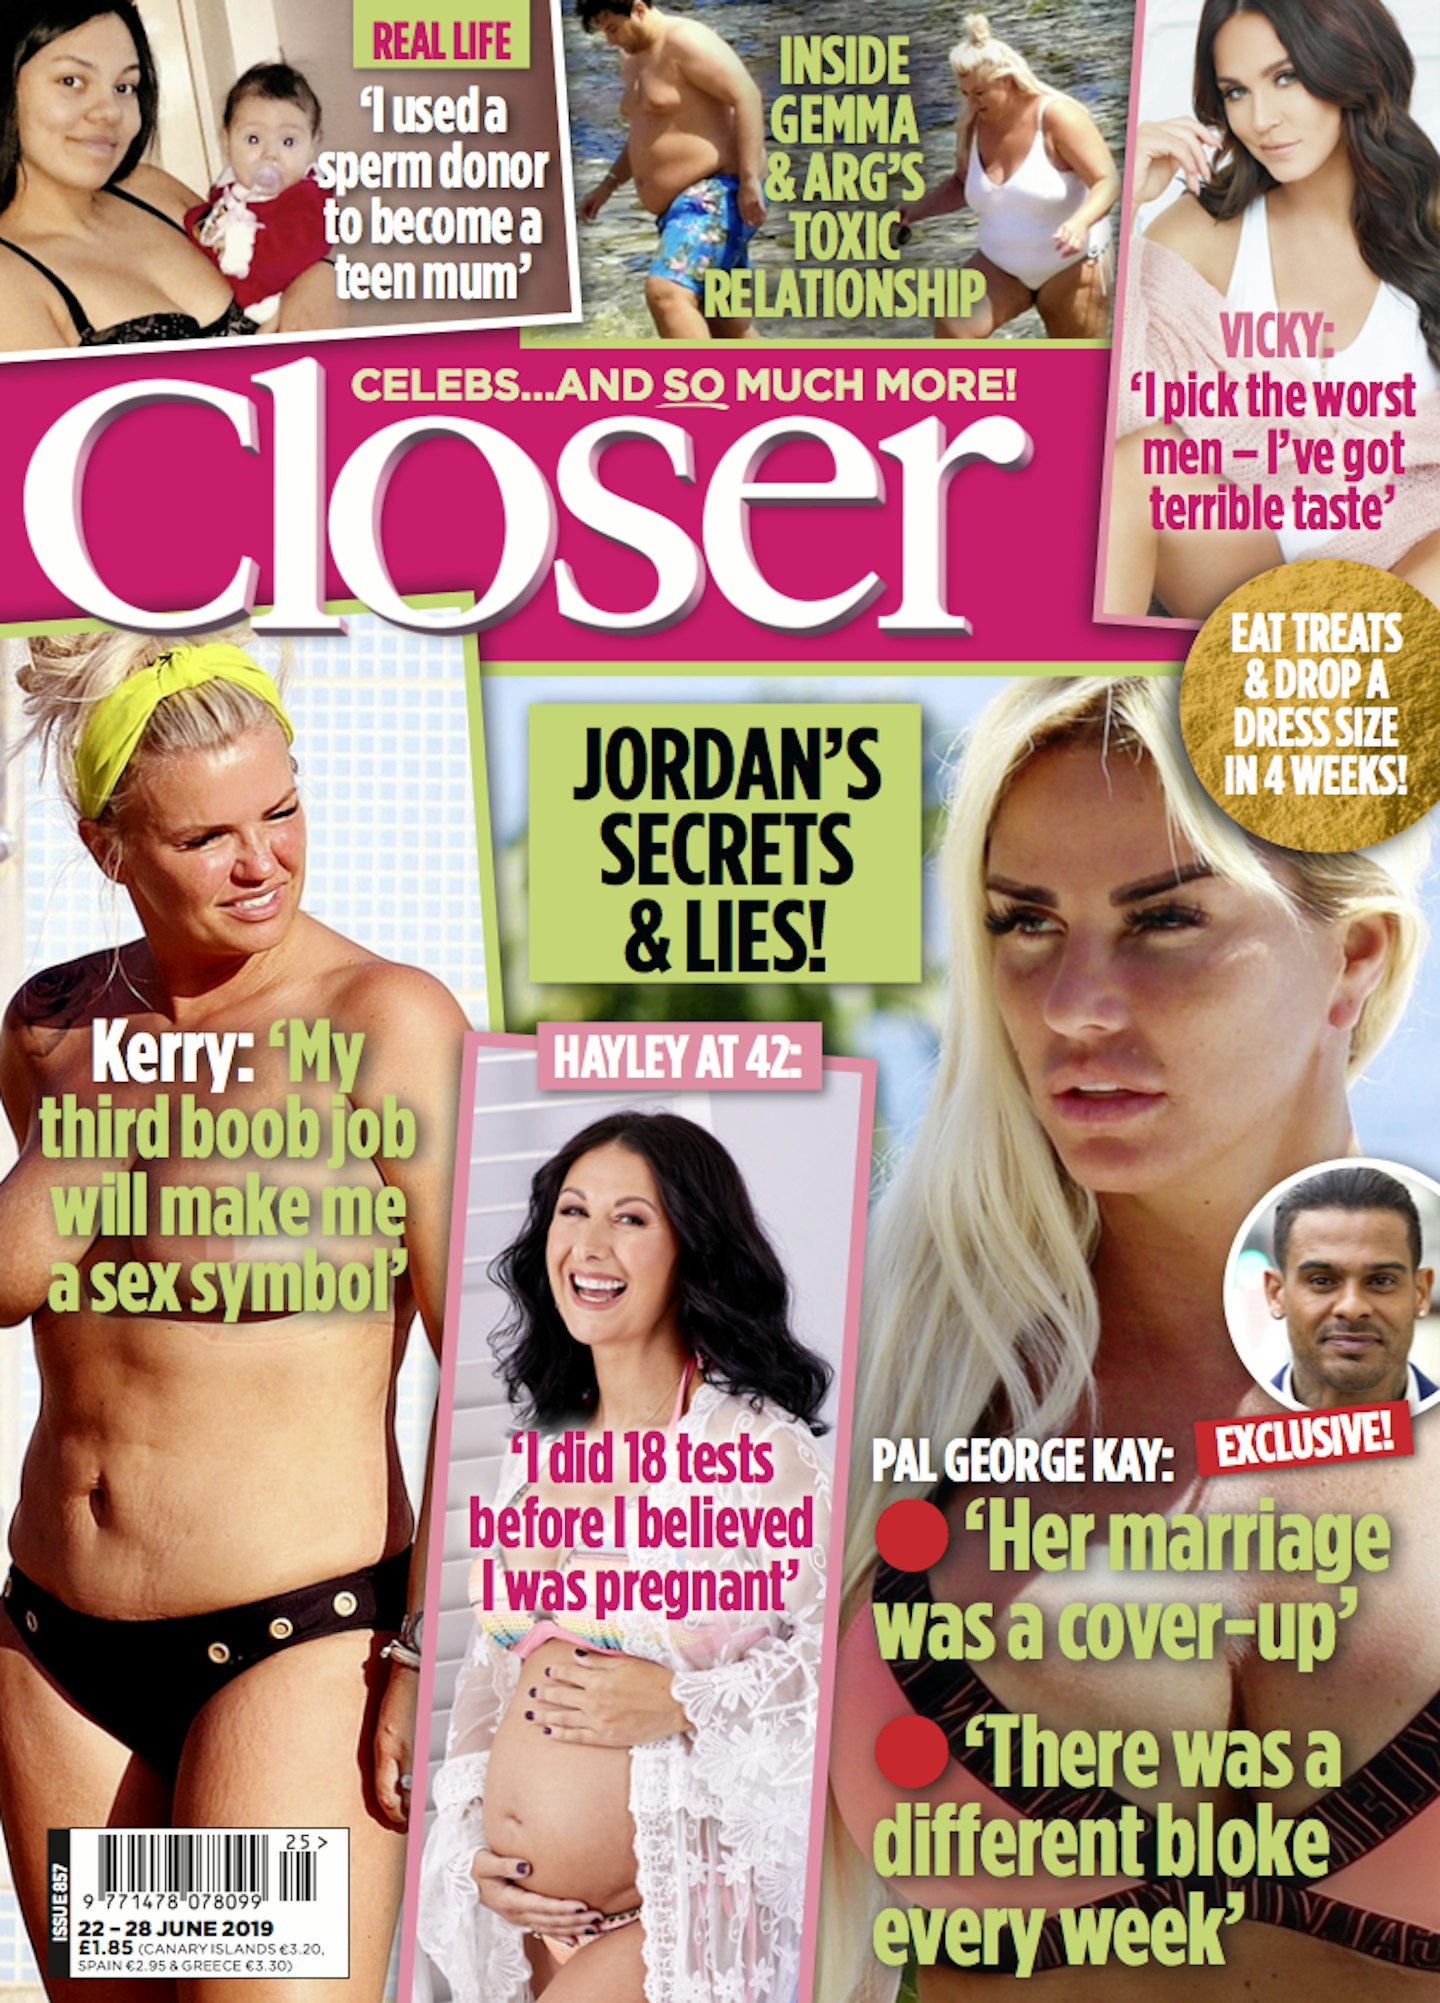 Closer magazine issie 857